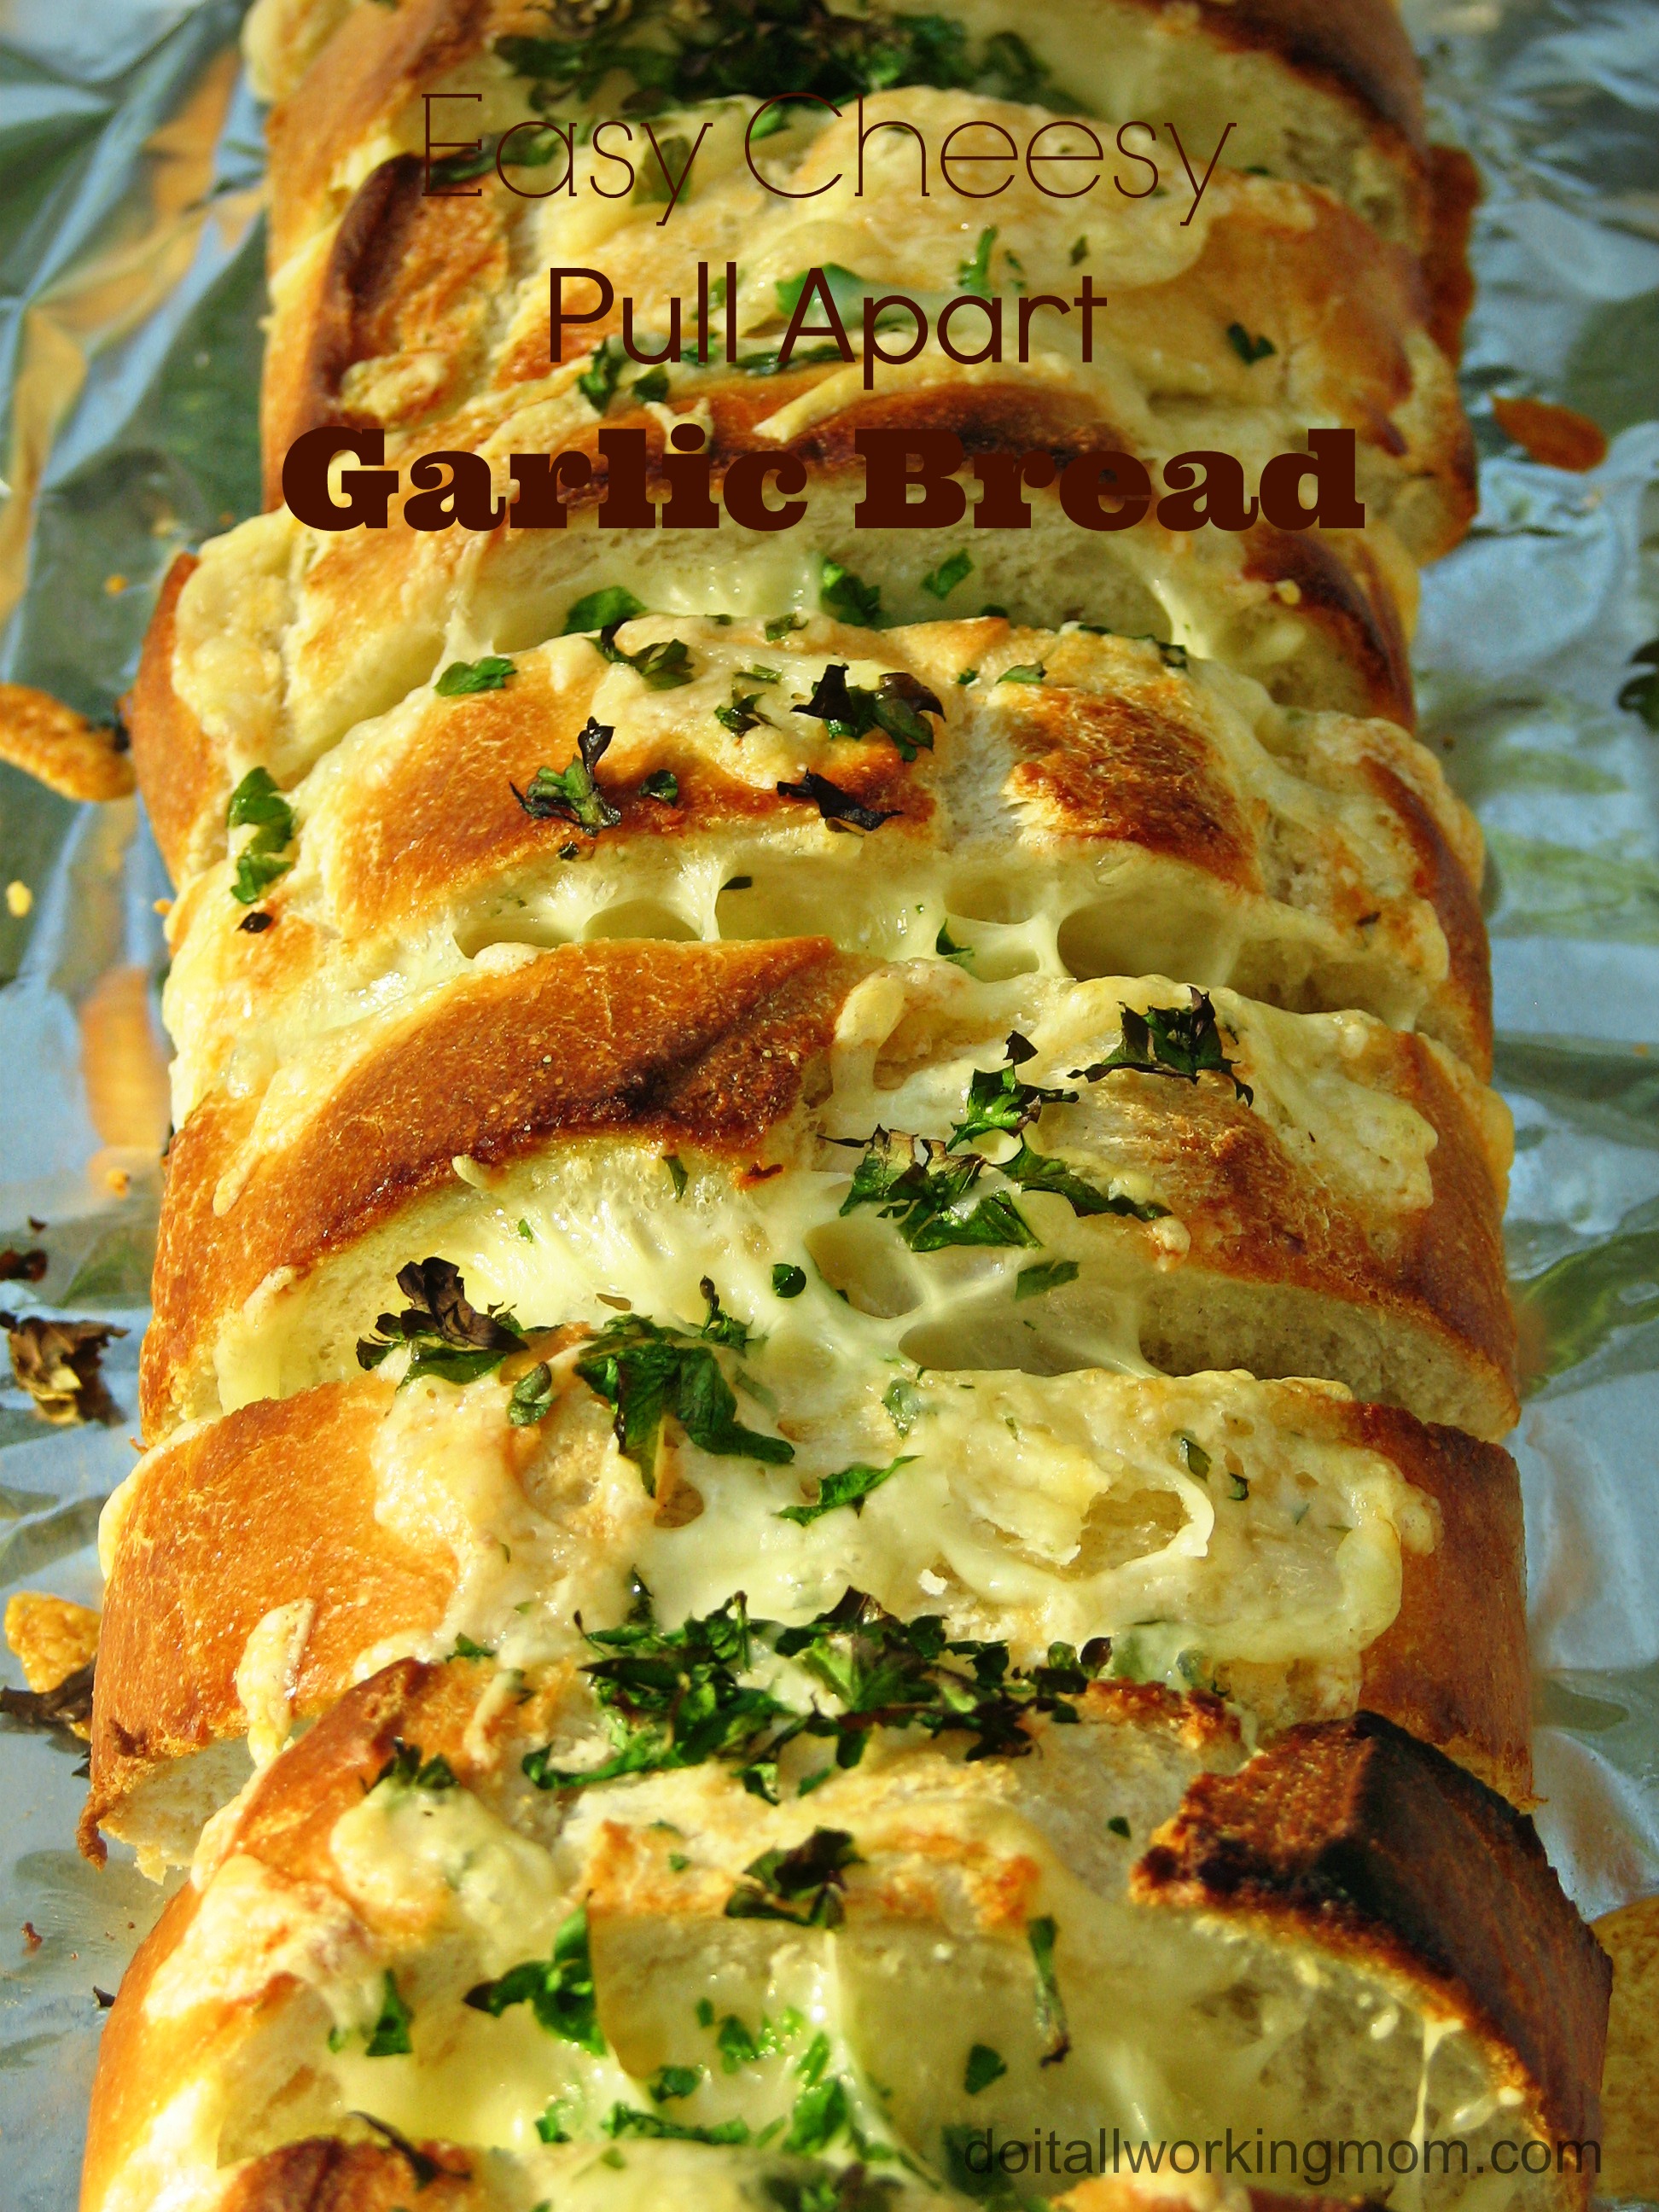 Easy Cheesy Pull Apart Garlic Bread